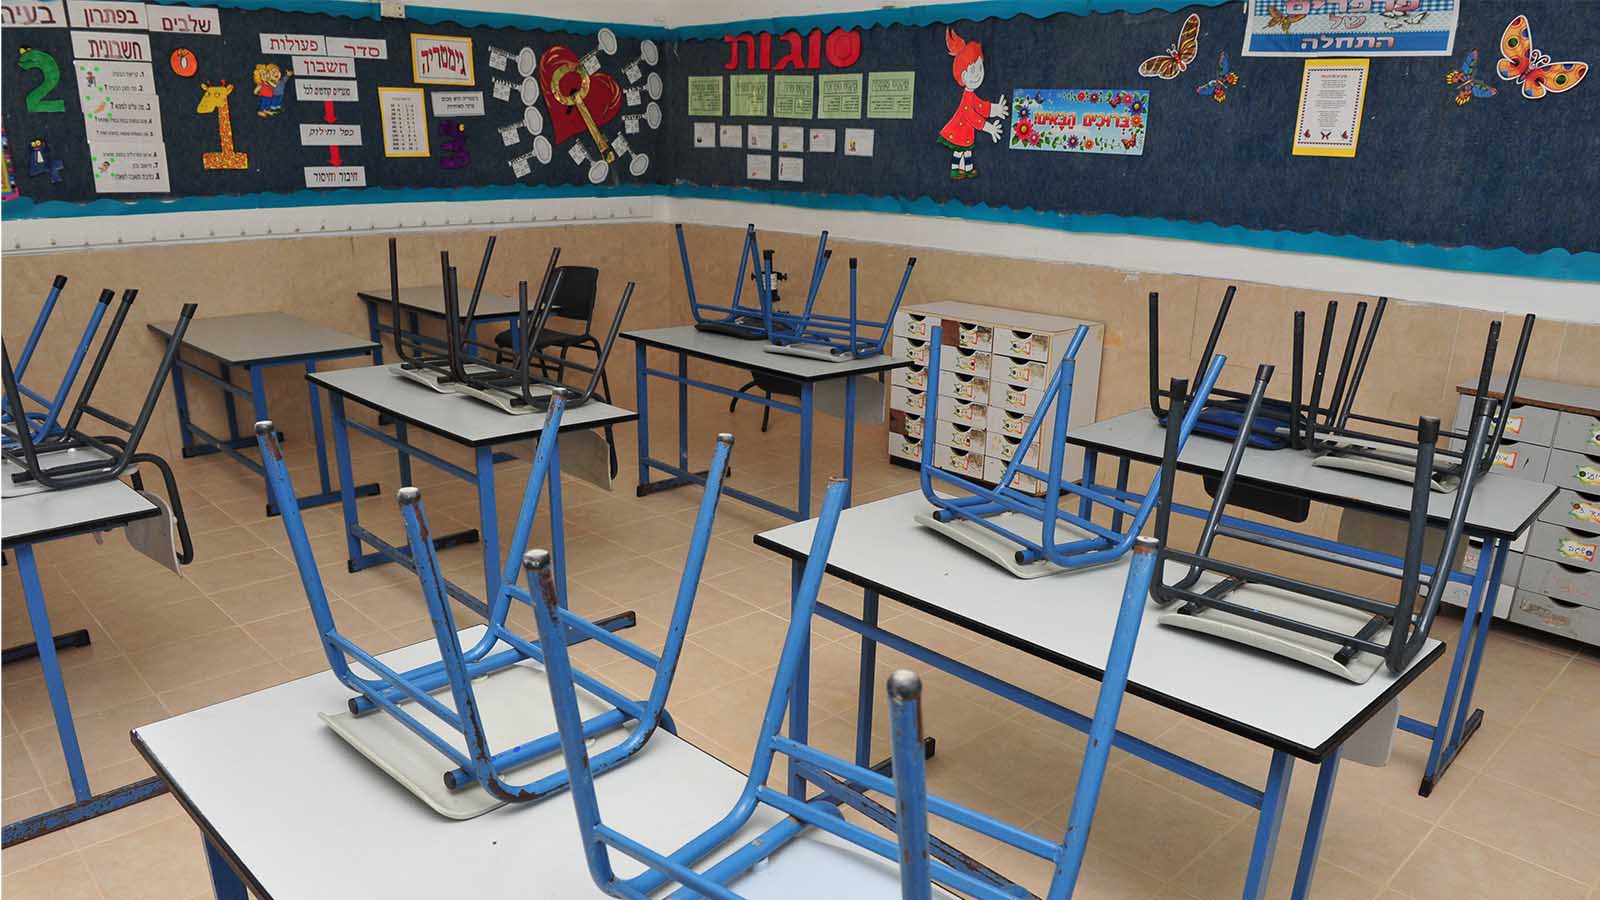 An empty classroom during a teacher's strike. (Photograph: ChameleonsEye / Shutterstock.com)